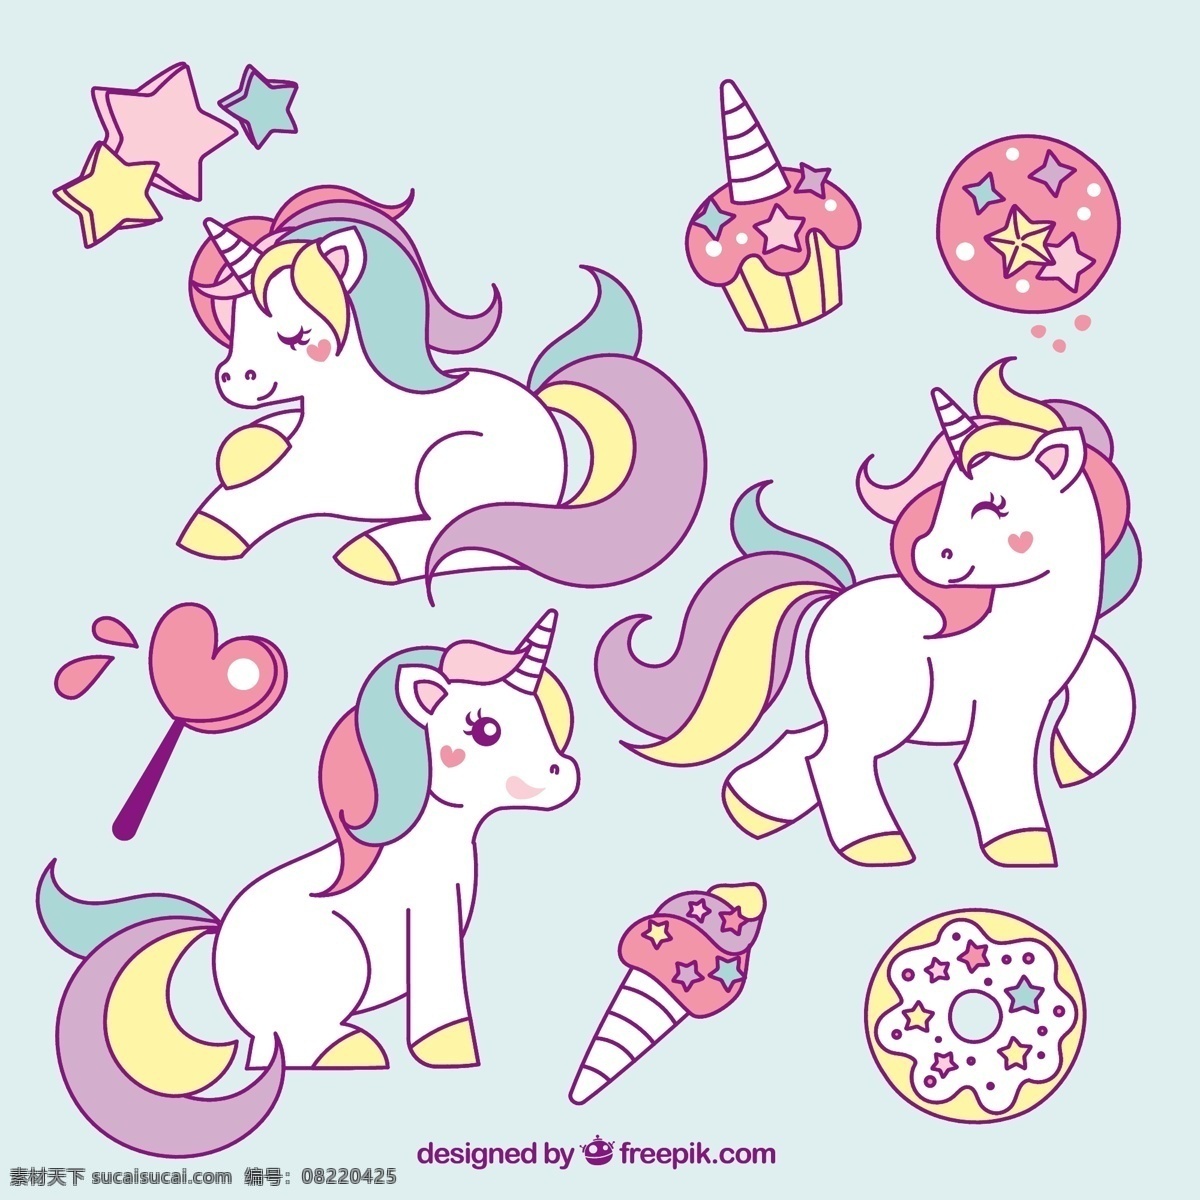 手绘麒麟 心 手 动物 蛋糕 手绘 马 星 可爱的 绘画 魔术 童话 元素 甜甜圈 可爱 棒棒糖 冰淇淋 幻想 独角兽